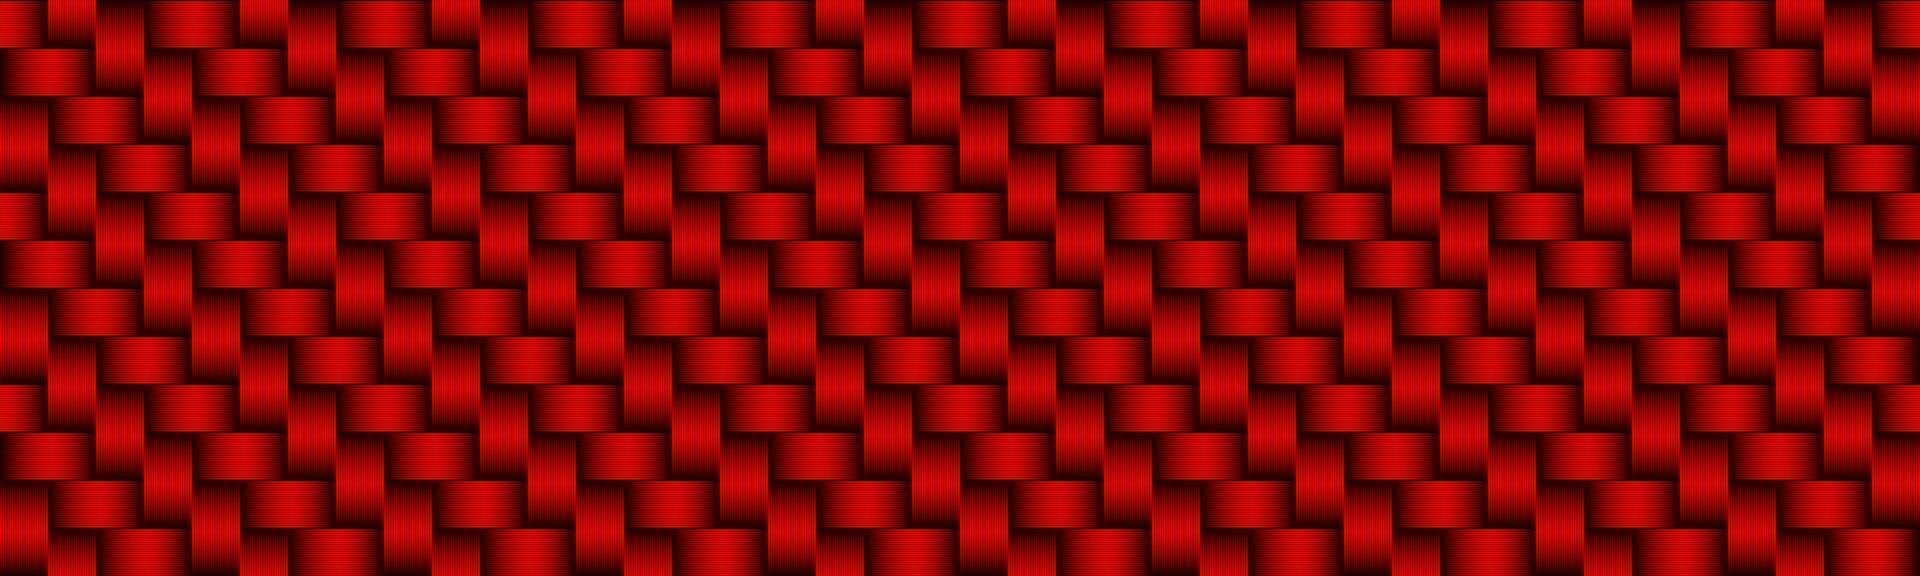 rosso carbonio astratto intestazione moderna metallico in acciaio inox look banner seamless pattern sfondo illustrazione vettoriale